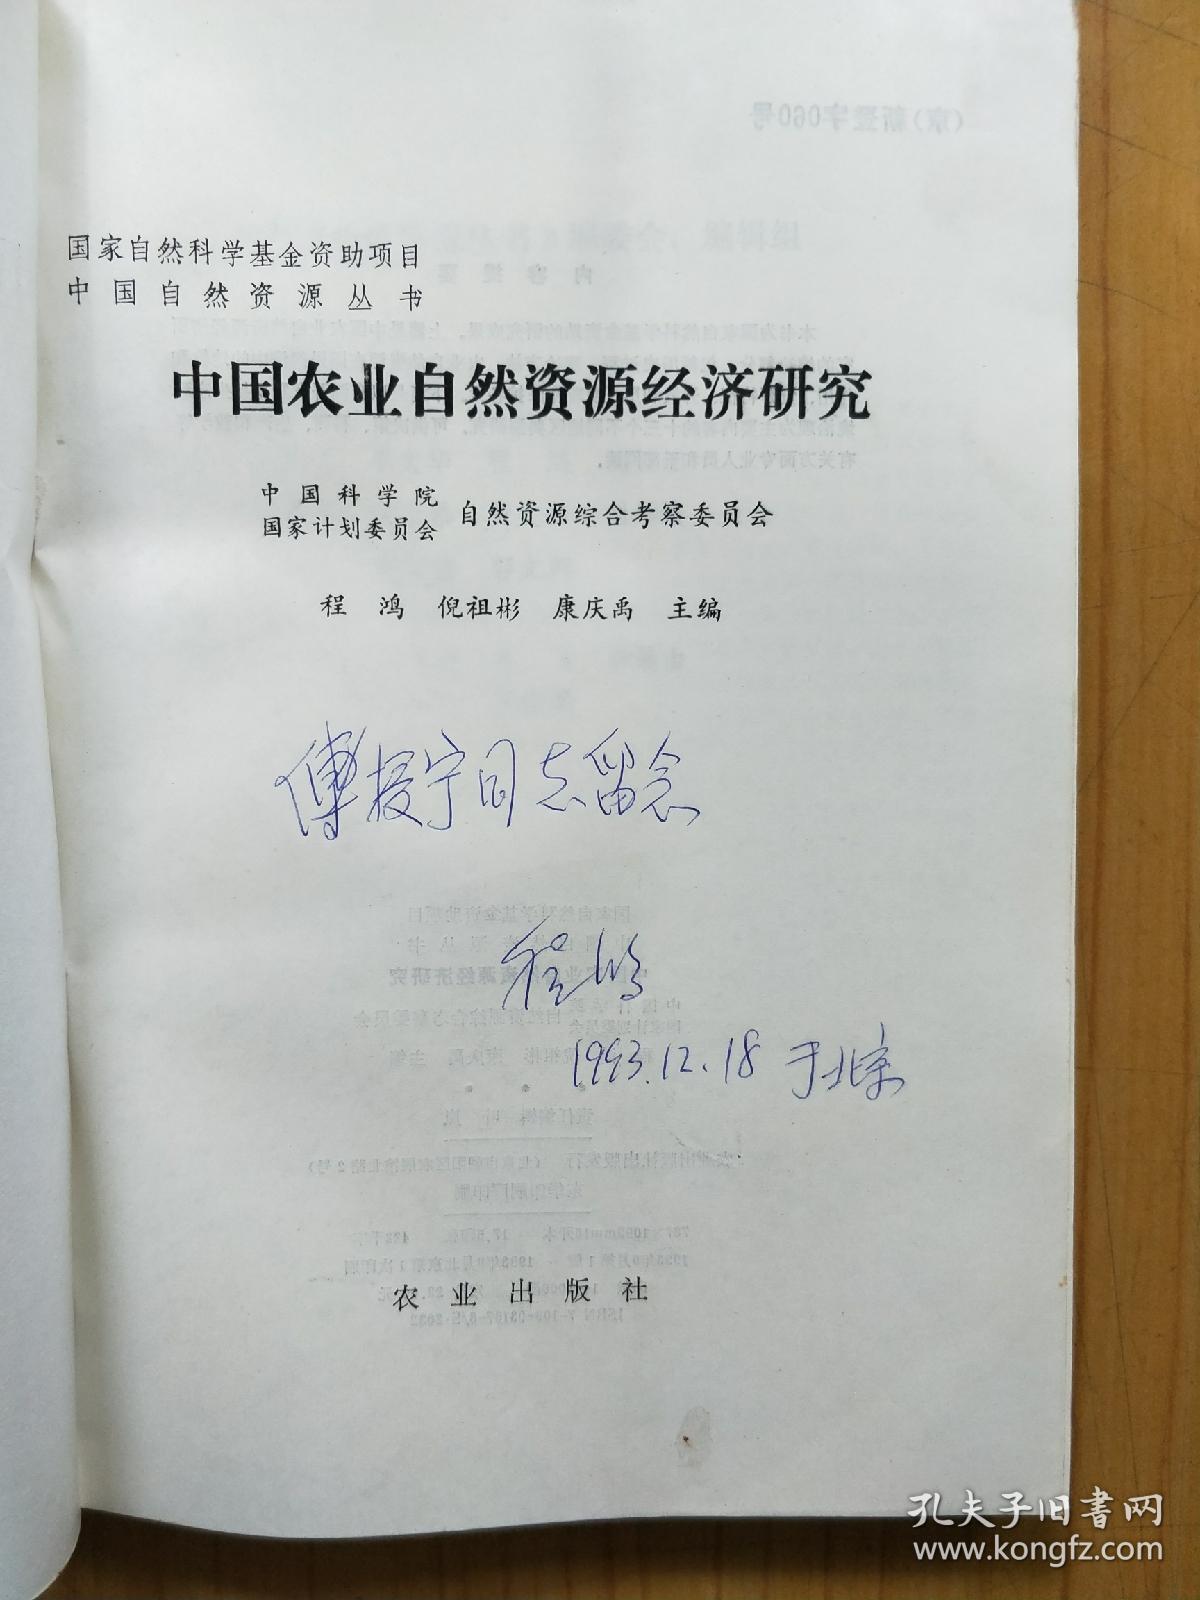 中国农业自然资源经济研究  作者签赠